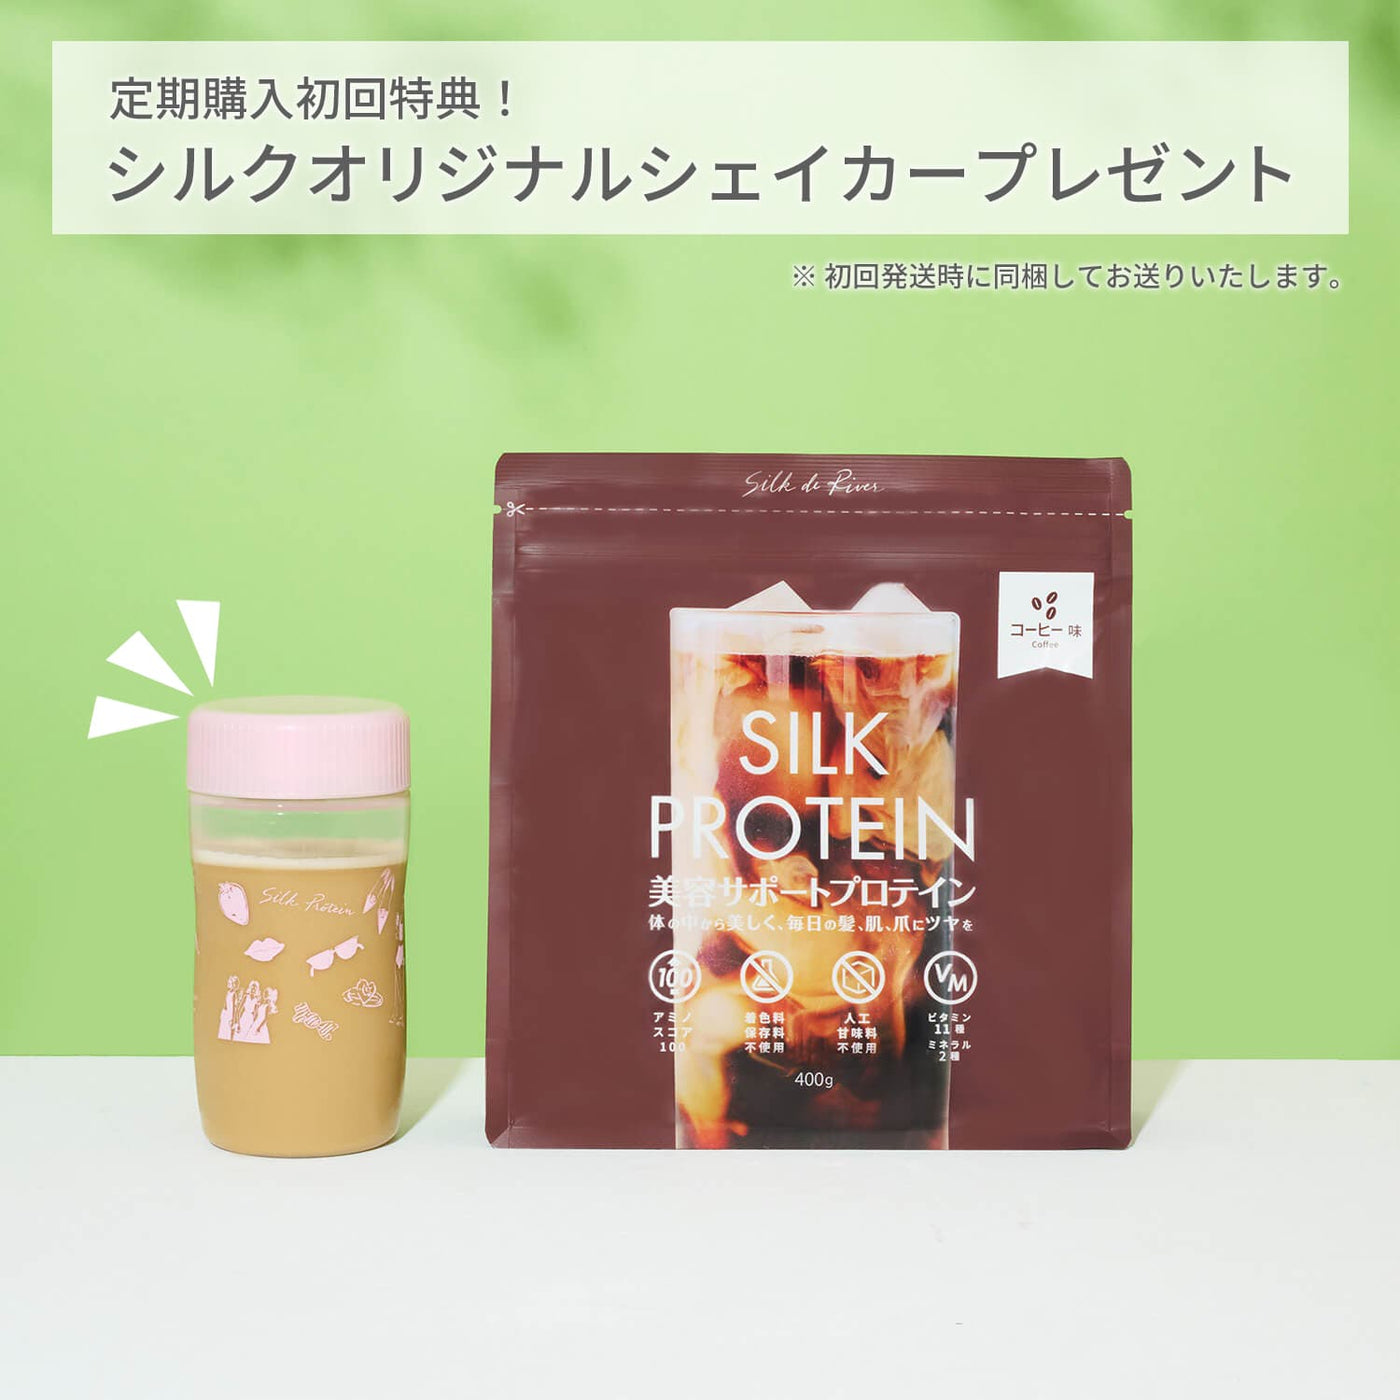 シルクプロテイン (コーヒー風味) | シルクドリバー公式オンラインショップ